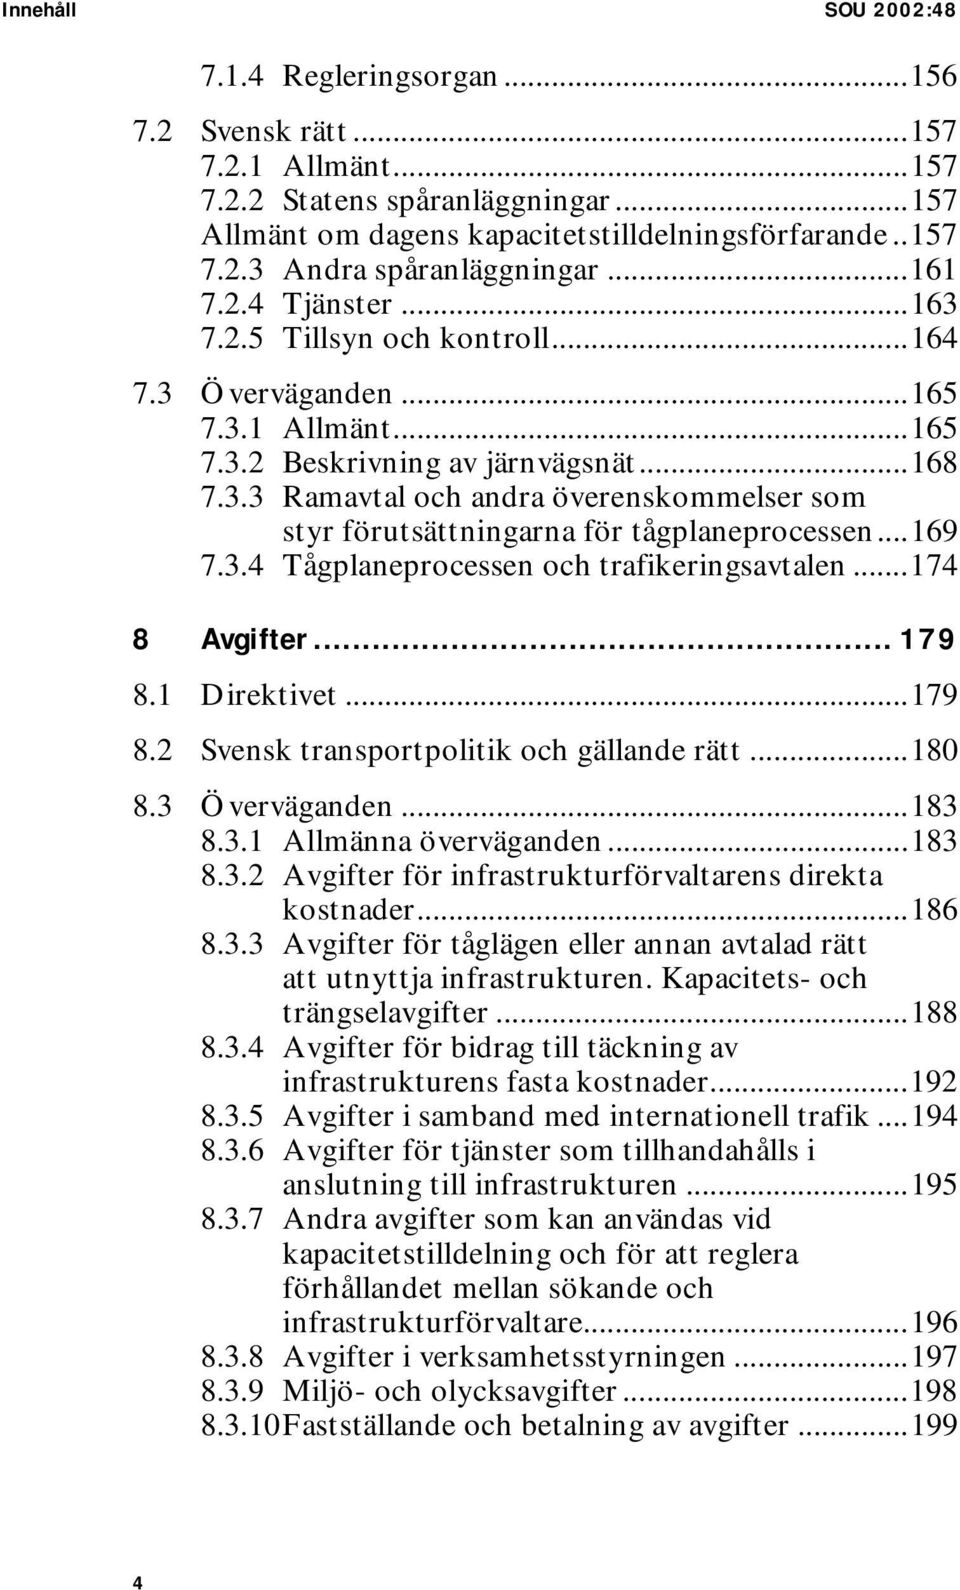 ..169 7.3.4 Tågplaneprocessen och trafikeringsavtalen...174 8 Avgifter... 179 8.1 Direktivet...179 8.2 Svensk transportpolitik och gällande rätt...180 8.3 Överväganden...183 8.3.1 Allmänna överväganden.